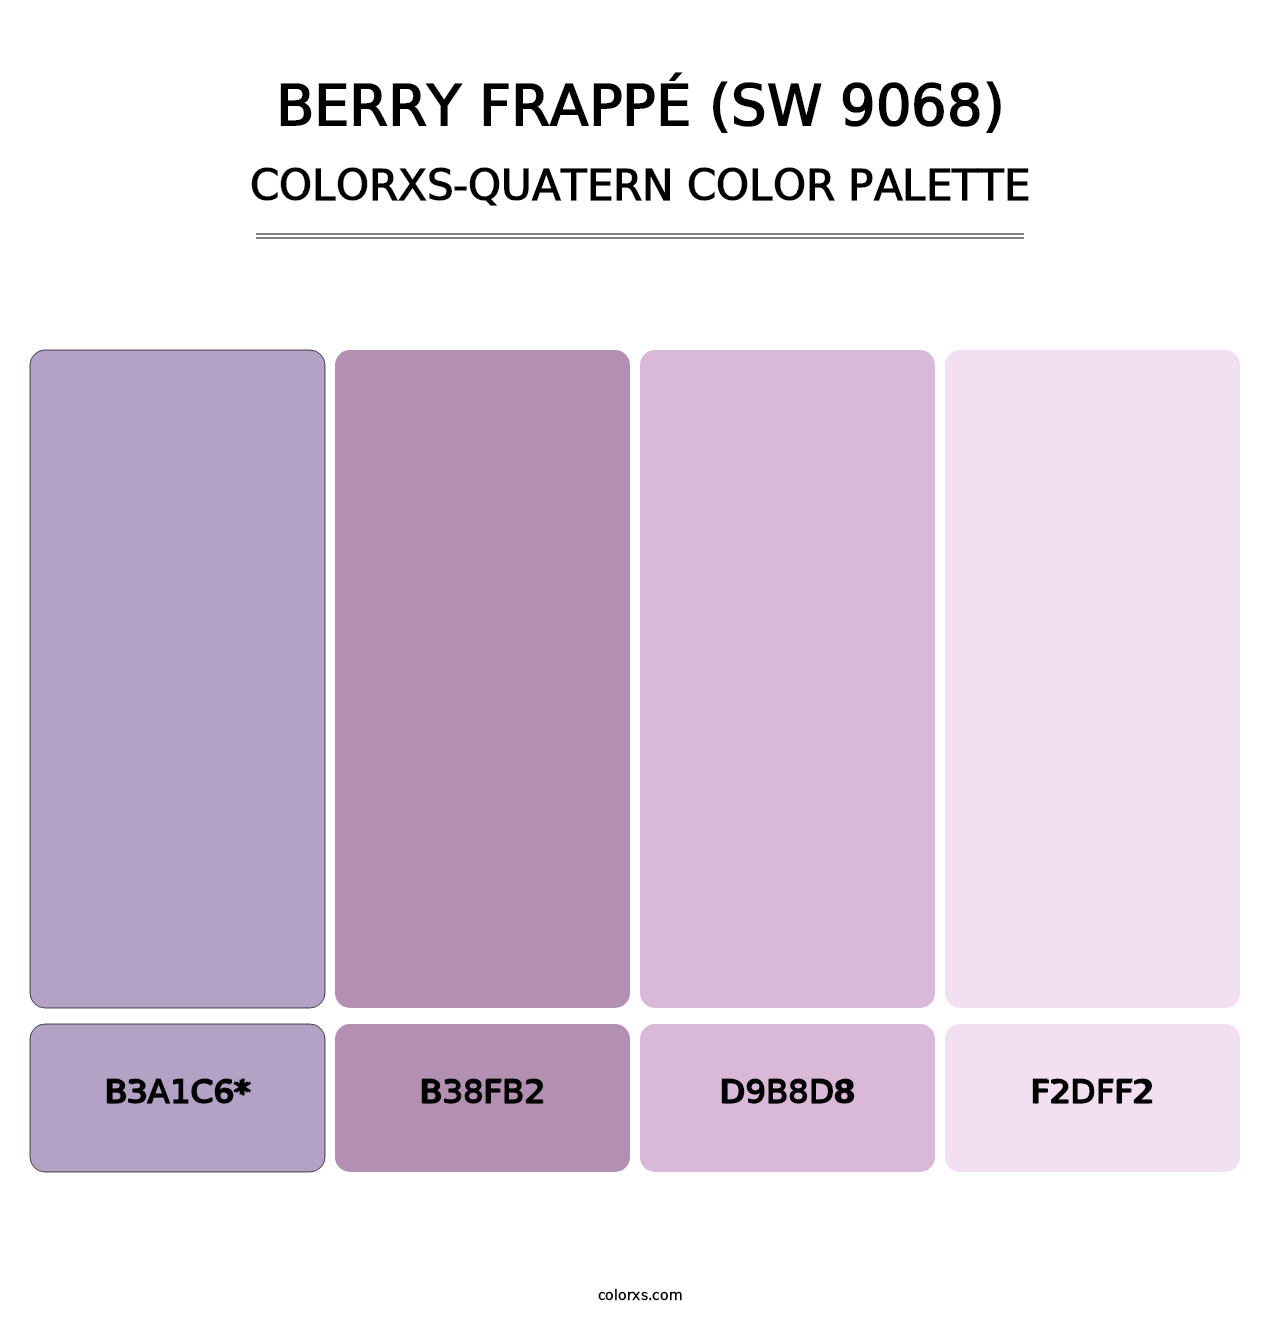 Berry Frappé (SW 9068) - Colorxs Quatern Palette